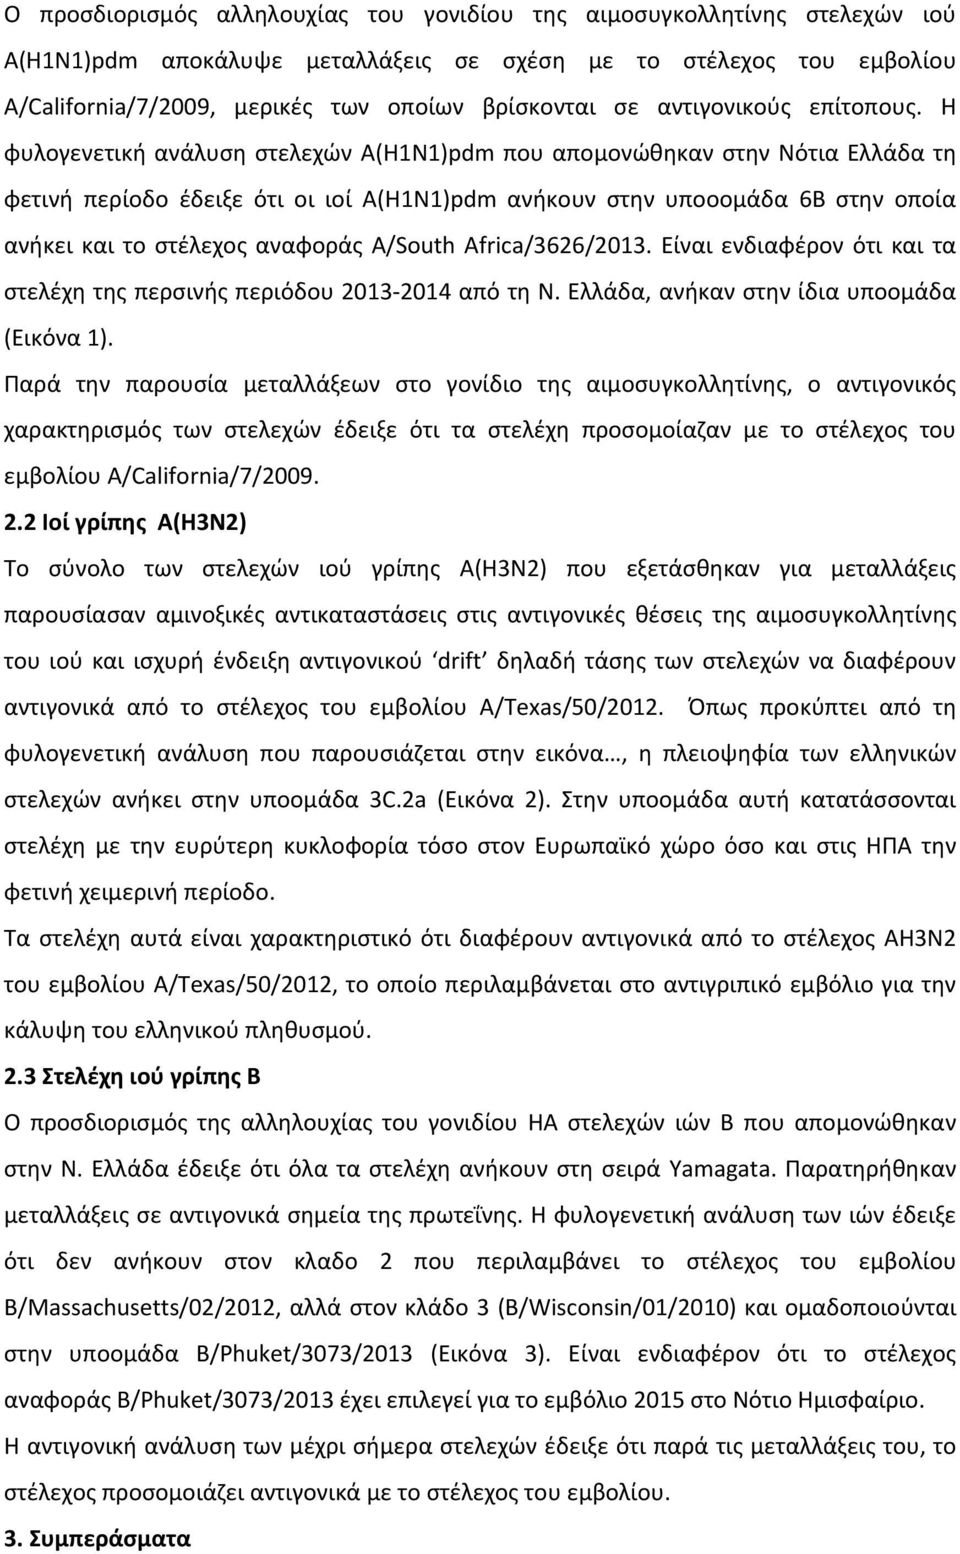 Η φυλογενετική ανάλυση στελεχών Α(Η1Ν1)pdm που απομονώθηκαν στην Νότια Ελλάδα τη φετινή περίοδο έδειξε ότι οι ιοί Α(Η1Ν1)pdm ανήκουν στην υποοομάδα 6Β στην οποία ανήκει και το στέλεχος αναφοράς